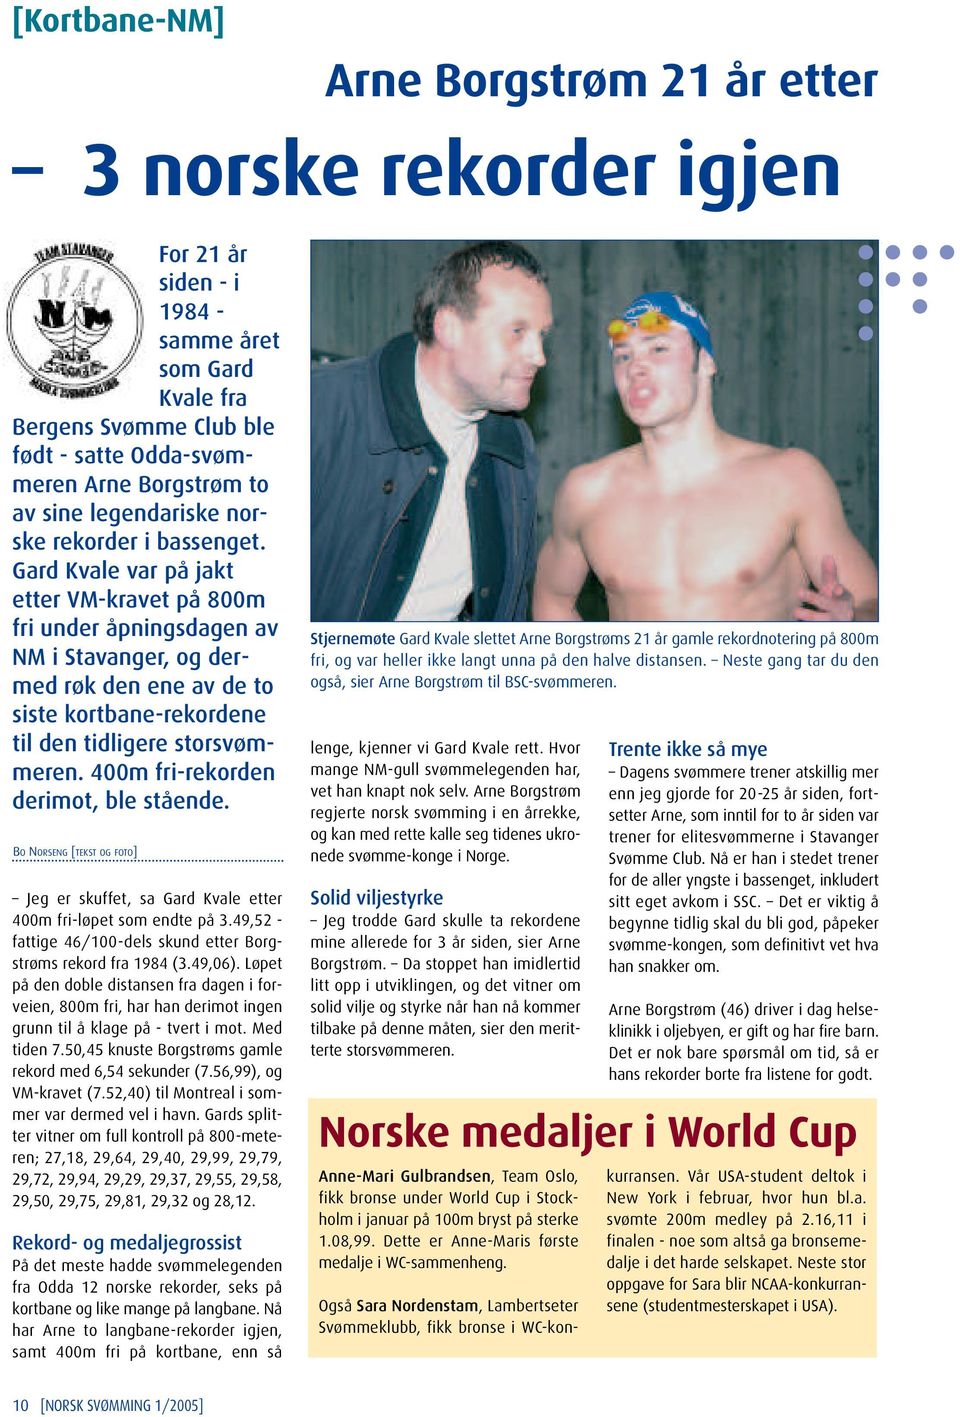 Gard Kvale var på jakt etter VM-kravet på 800m fri under åpningsdagen av NM i Stavanger, og dermed røk den ene av de to siste kortbane-rekordene til den tidligere storsvømmeren.